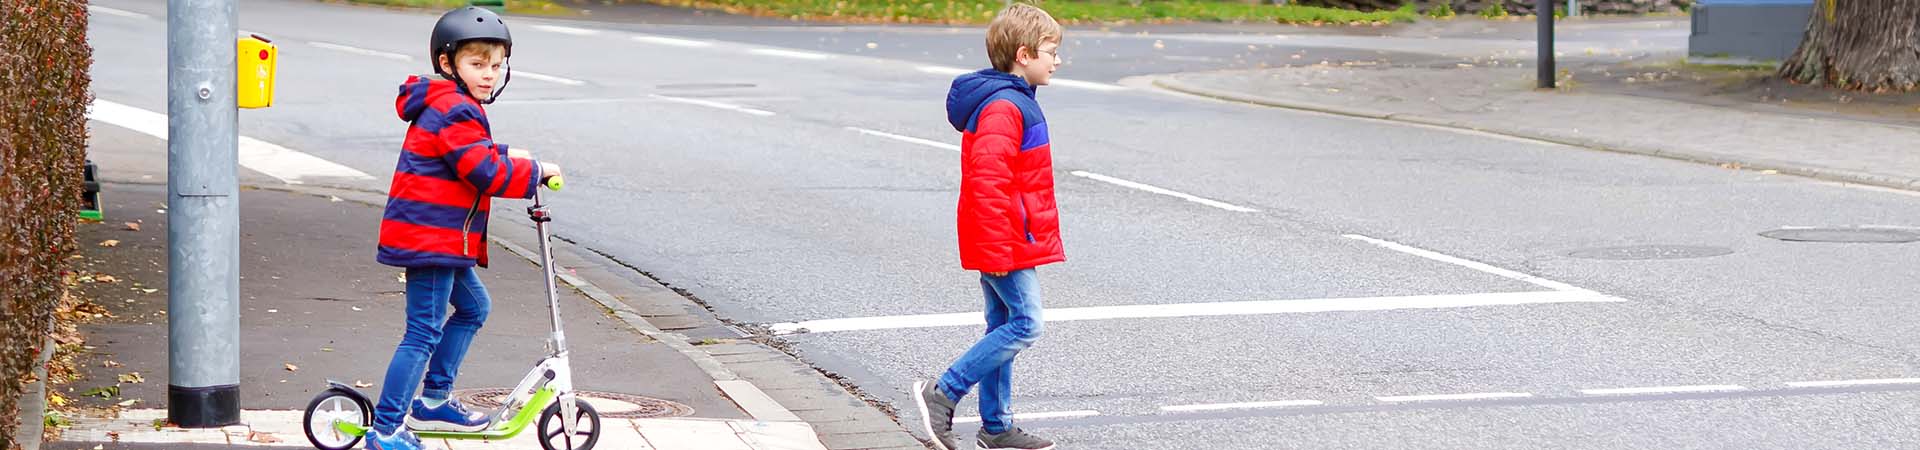 Dzieci jako uczestnicy ruchu drogowego – chłopcy przechodzą przez jezdnię 